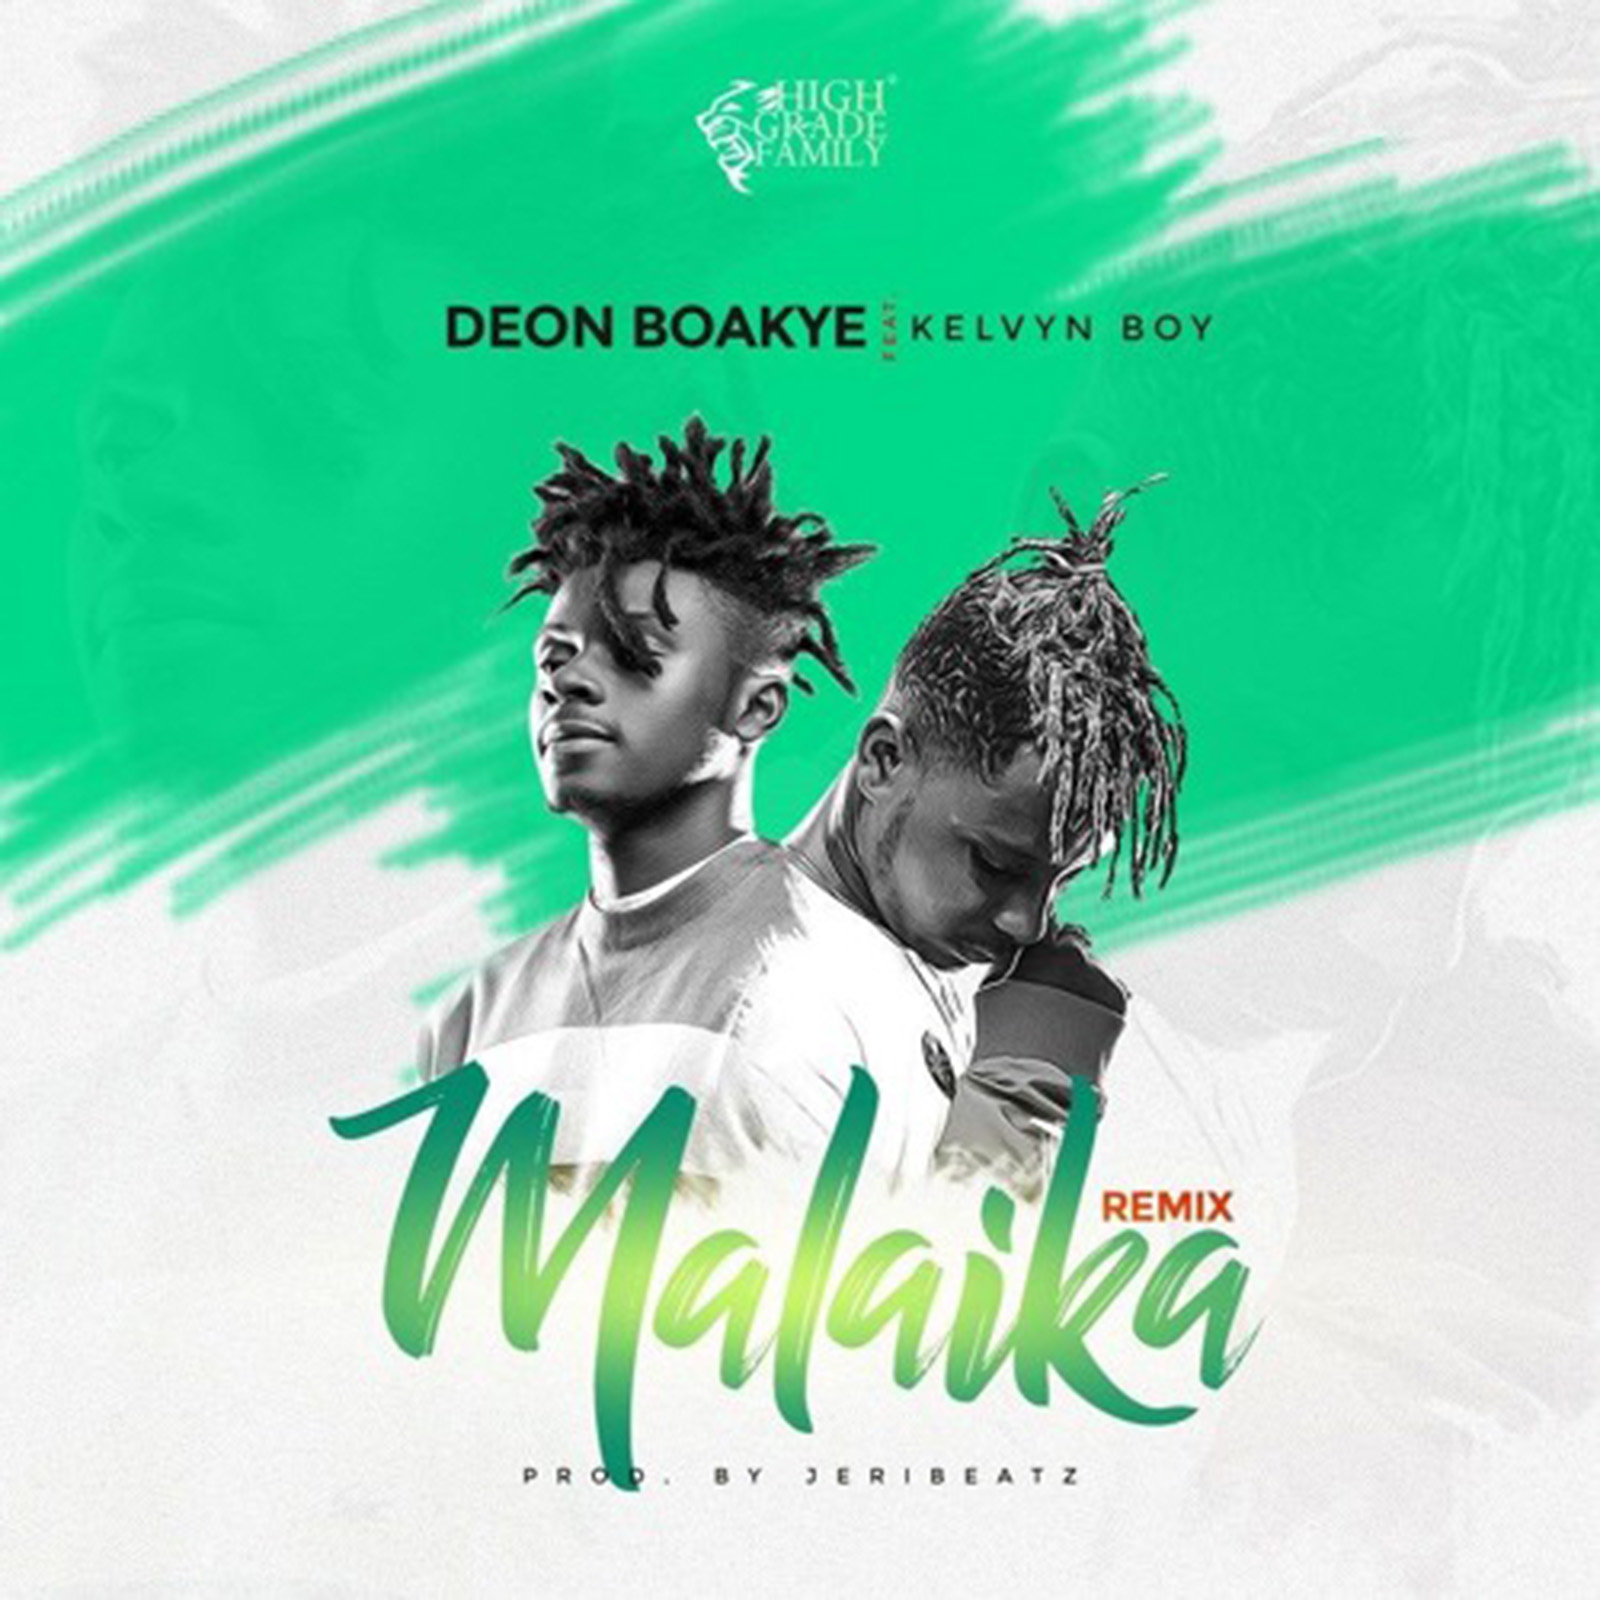 Malaika Remix by Deon Boakye feat. Kelvyn Boy